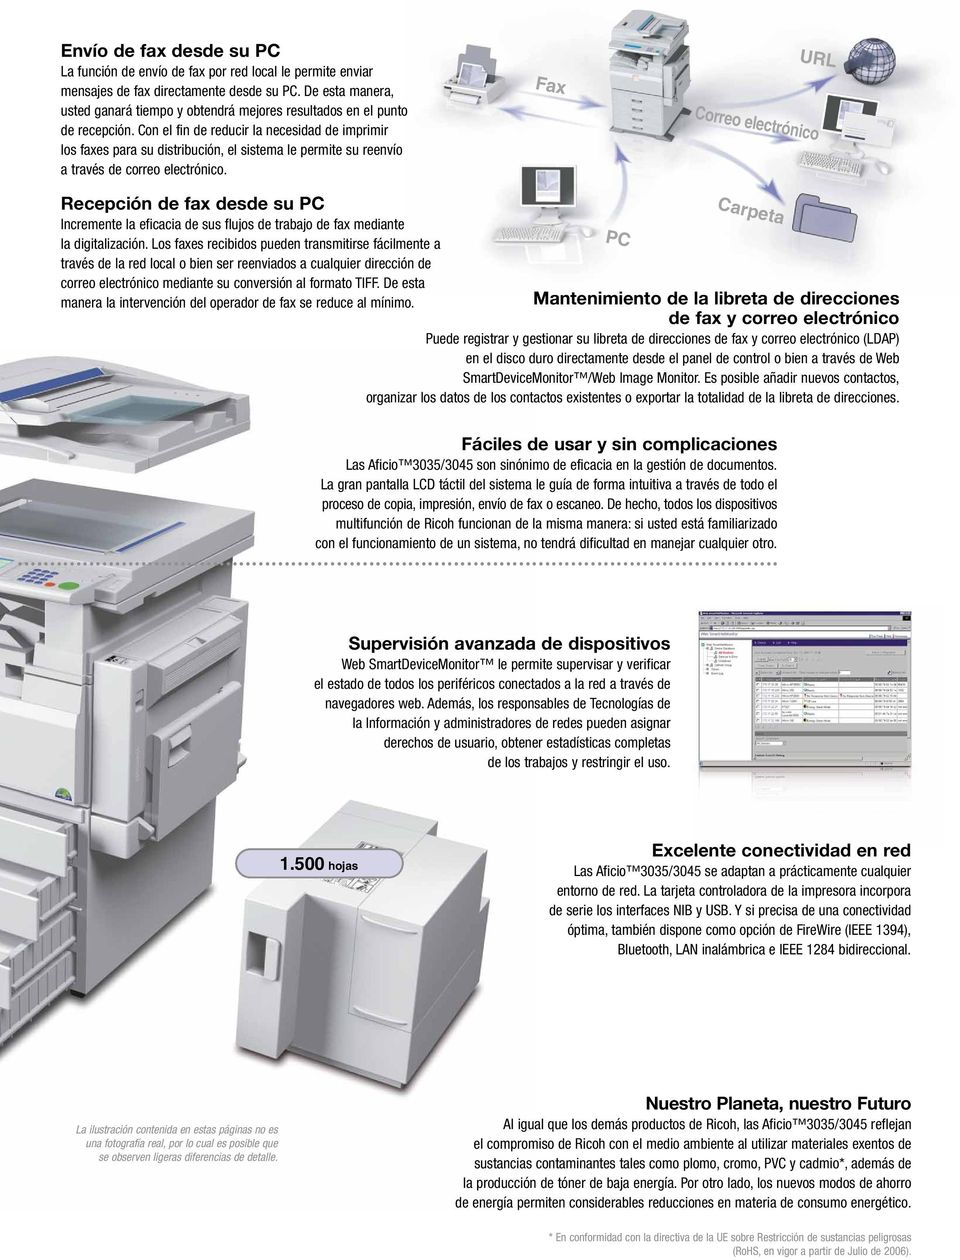 Con el fin de reducir la necesidad de imprimir los faxes para su distribución, el sistema le permite su reenvío a través de correo electrónico.